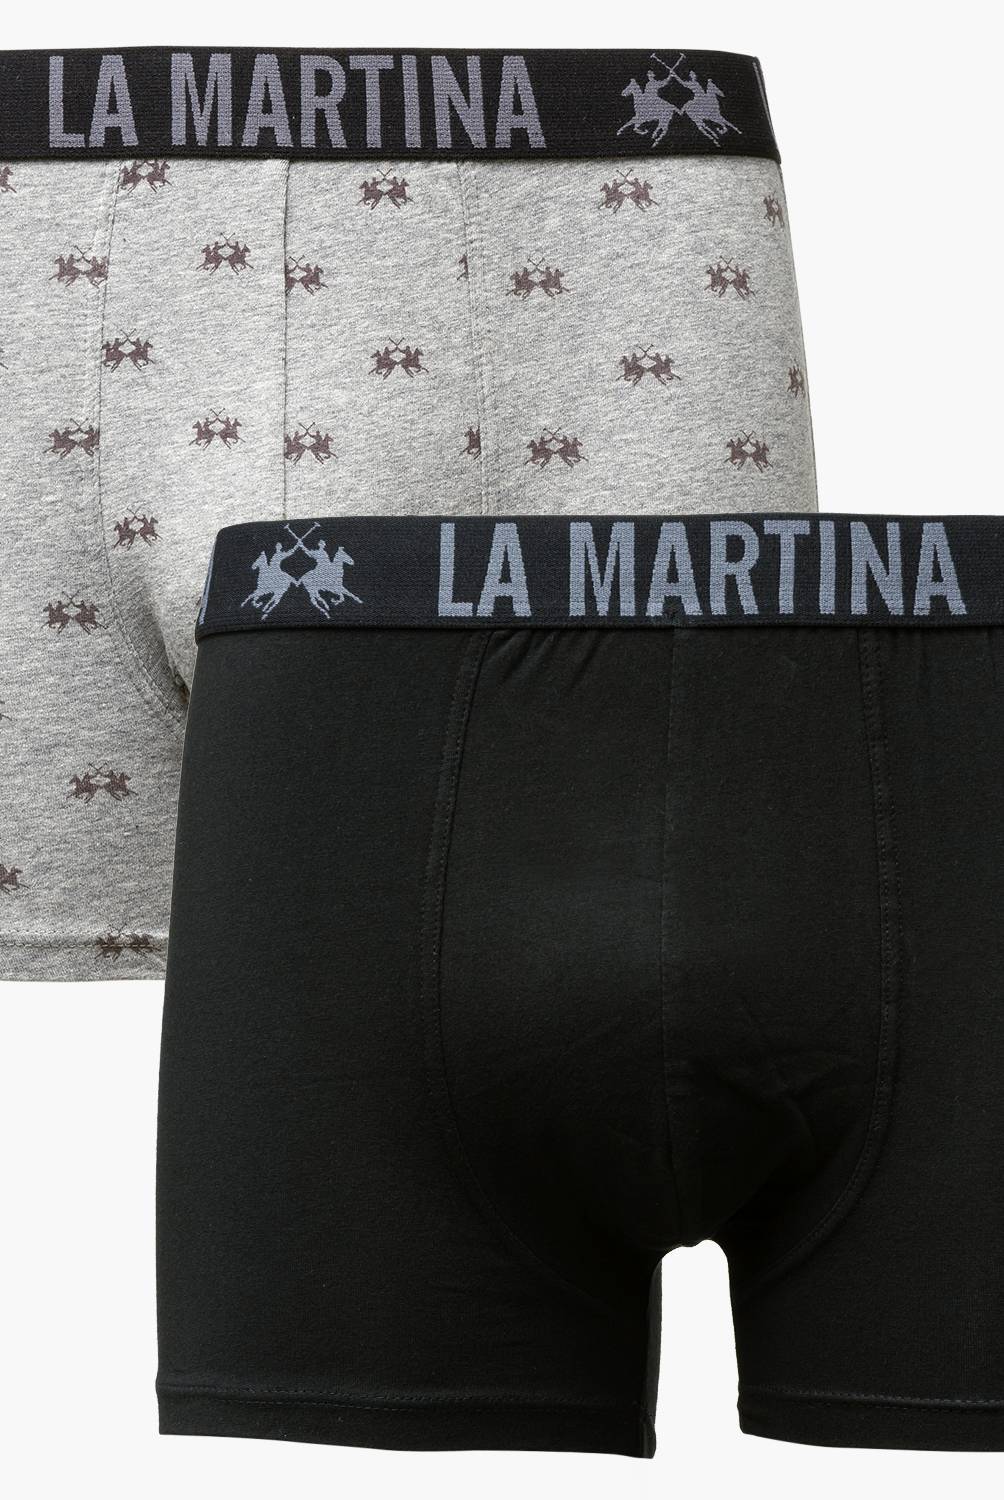 LA MARTINA - La Martina Pack De 2 Boxer Algodón Premium Hombre